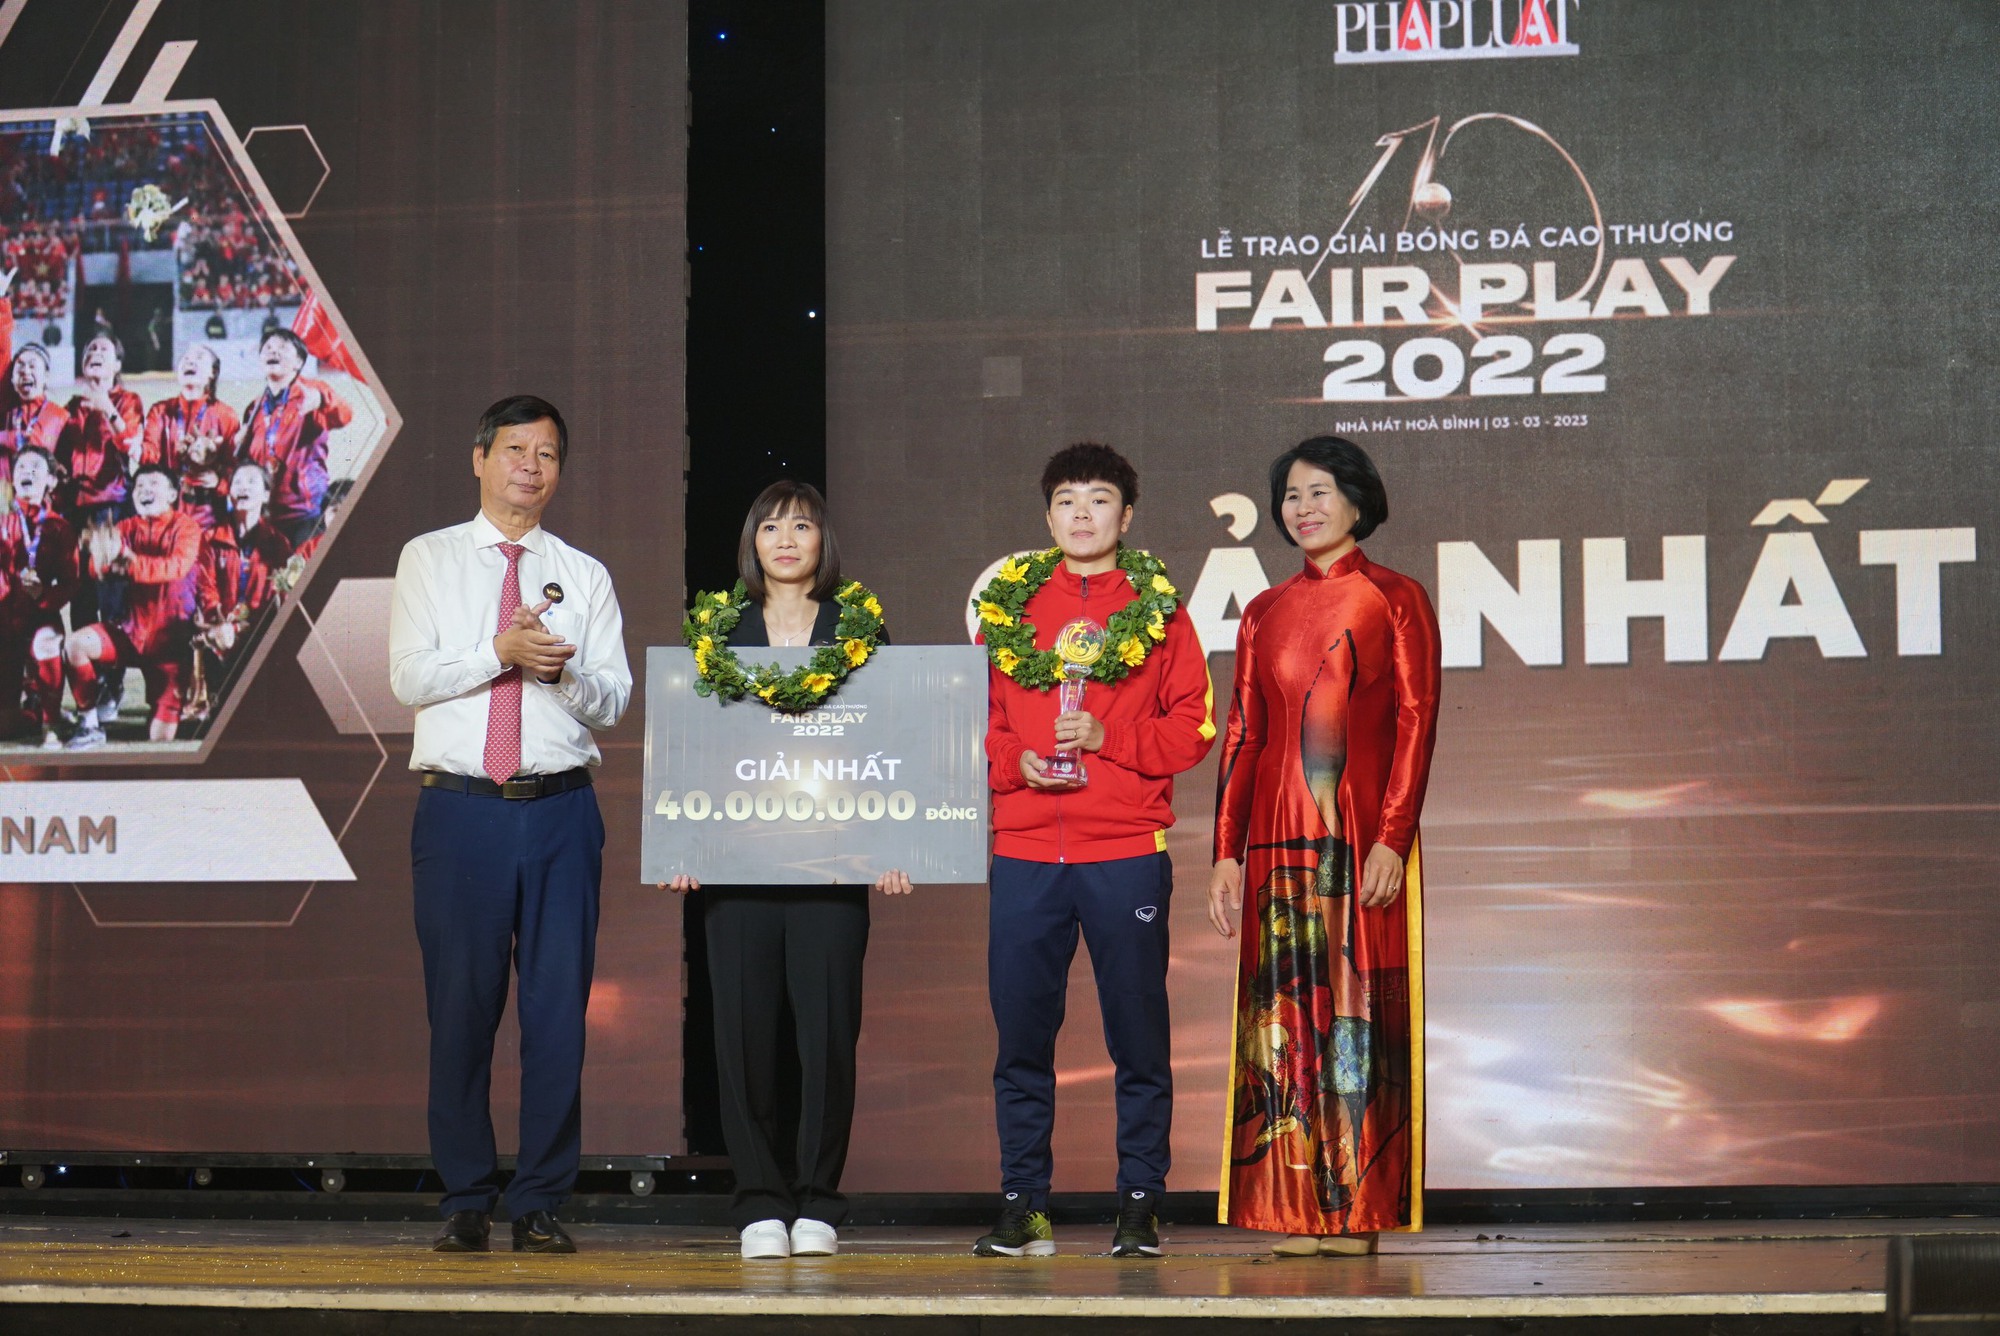 Đội tuyển bóng đá nữ Việt Nam đoạt giải Fair Play 2022 - Ảnh 1.